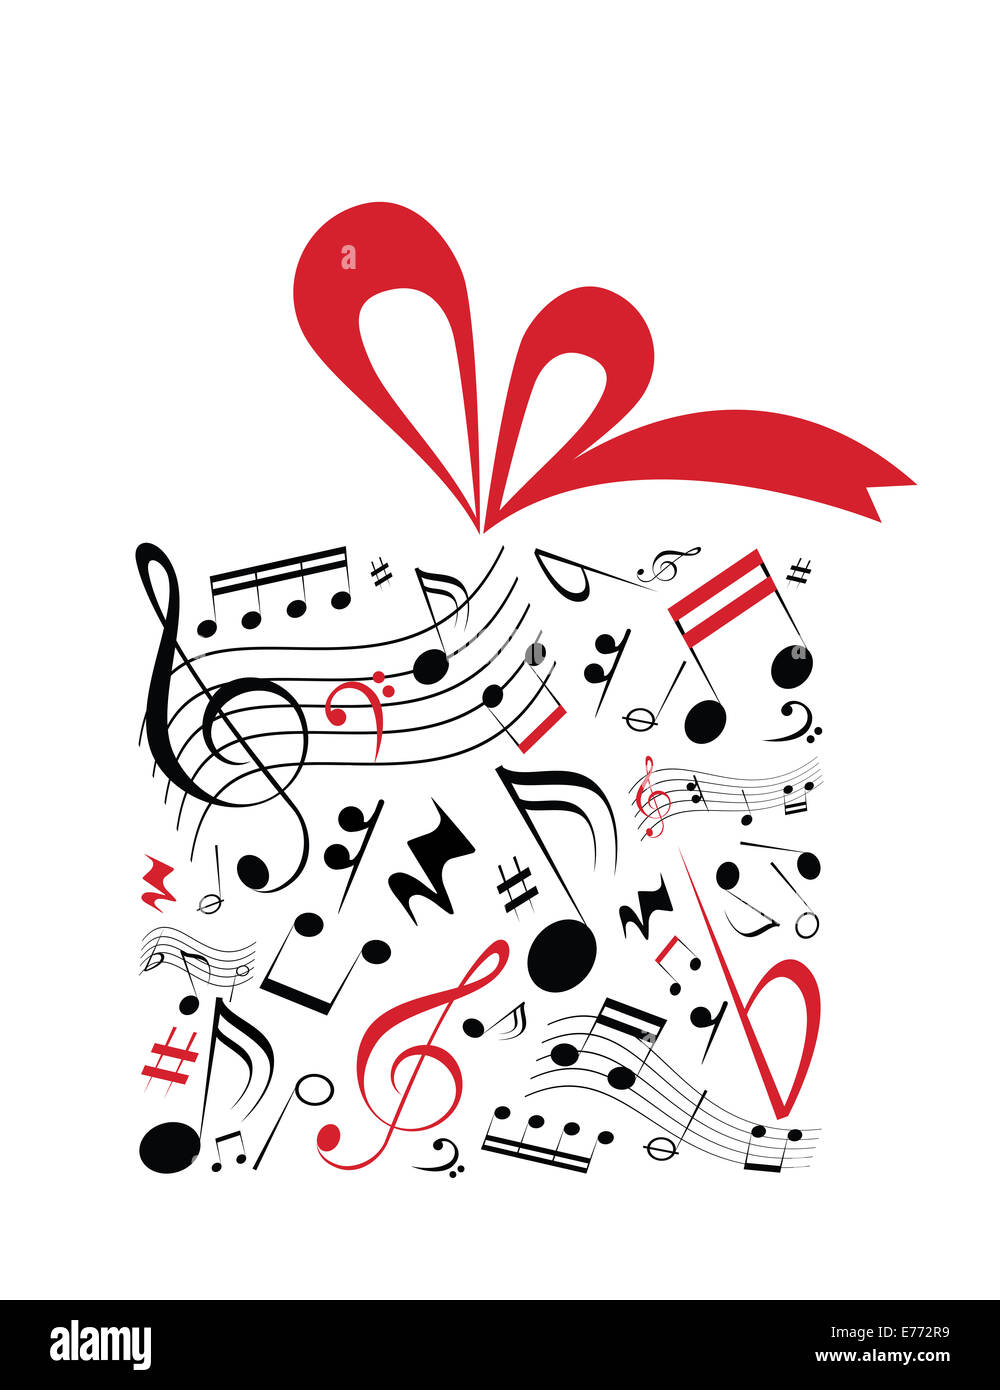 Musik-Konzept Vektor der Geschenk-Box mit rotem Band und voller Musik-Noten Stockfoto